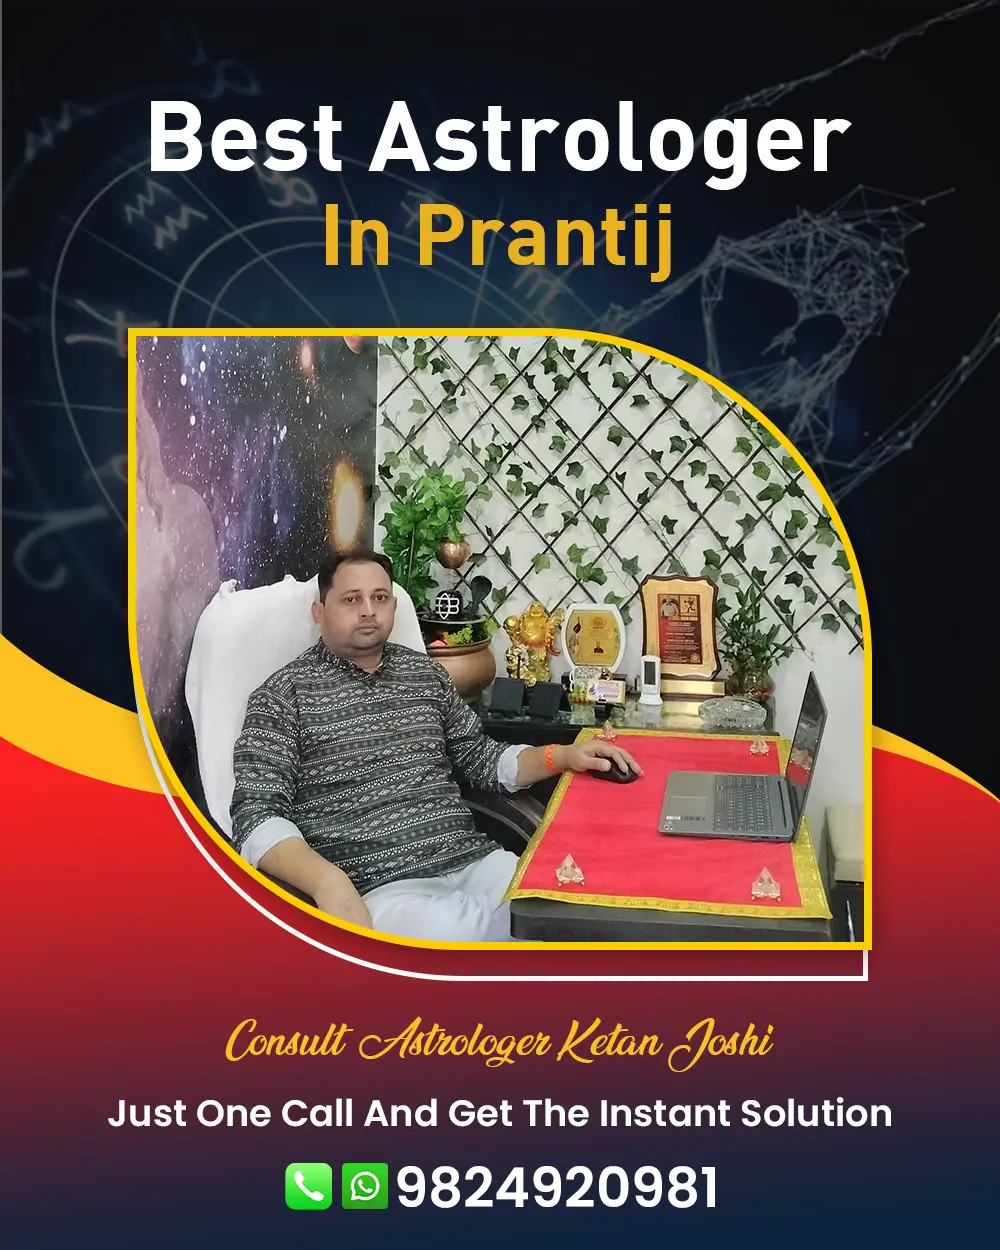 Best Astrologer In Prantij